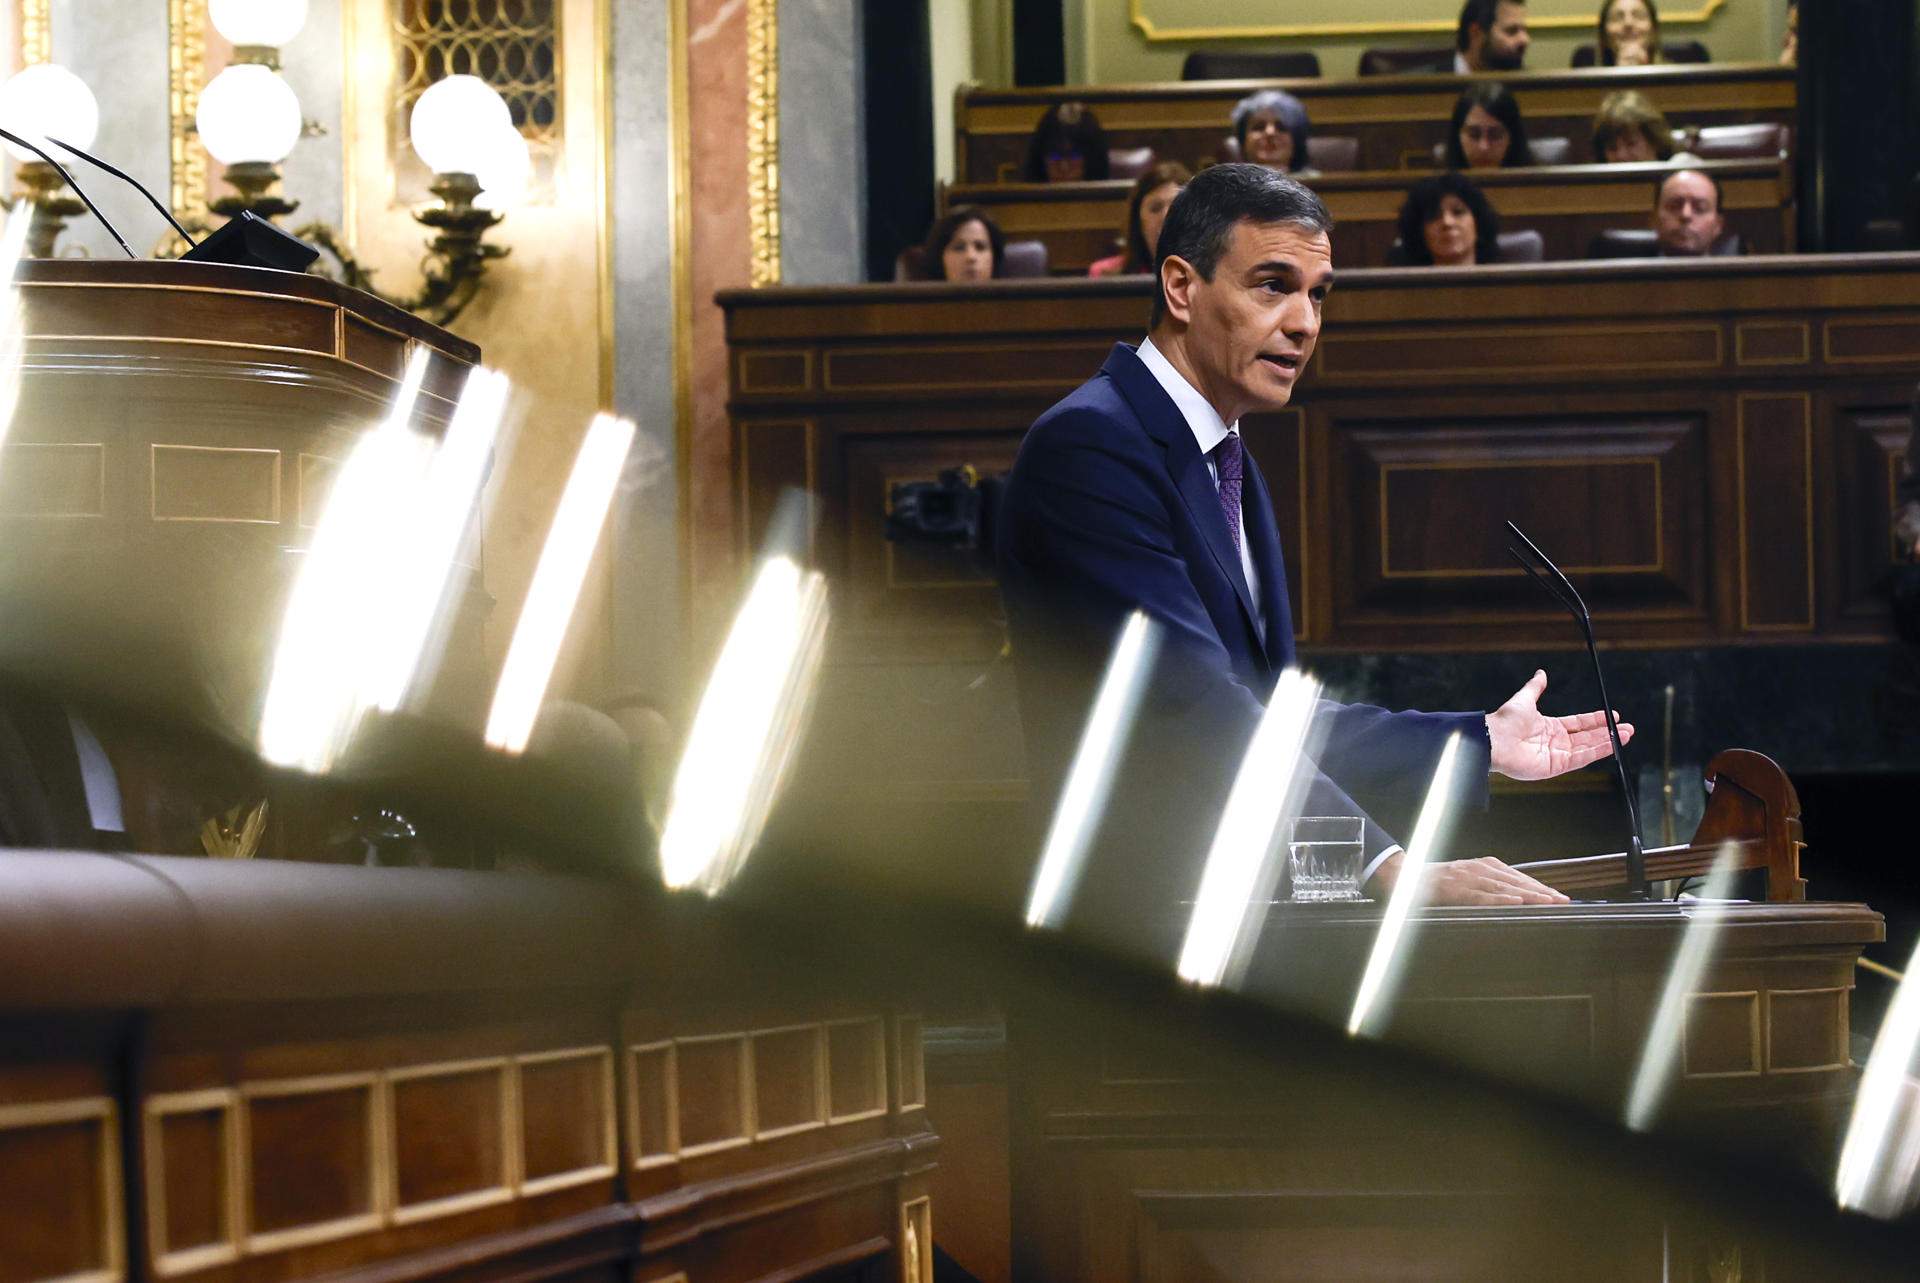 Sánchez defensa “l'honestedat” de la seva esposa i repta el PP: “Encantats de comparèixer al Senat”